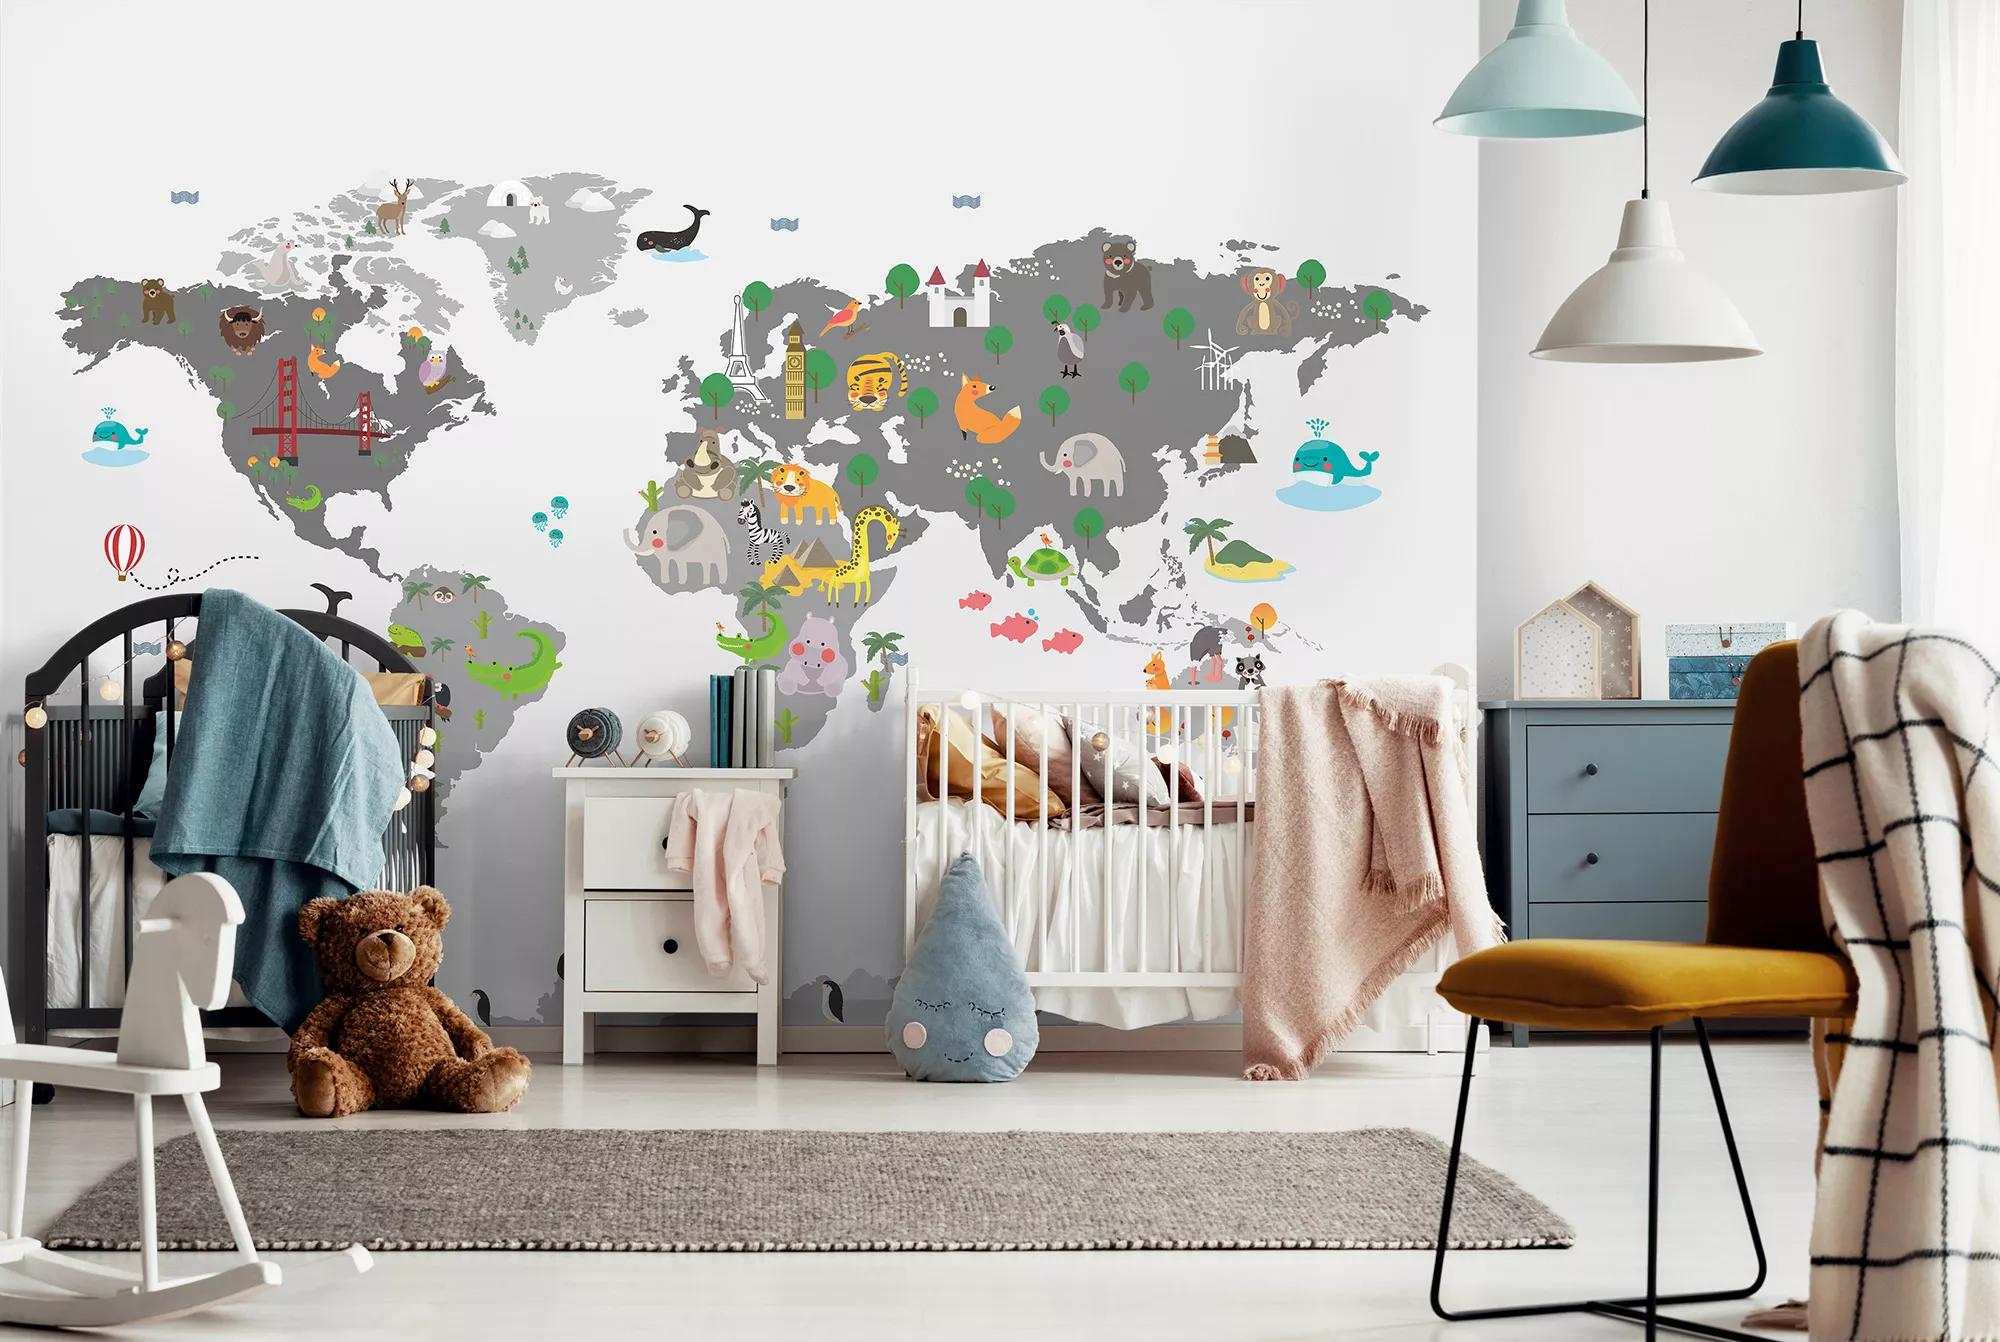 Fali poszter gyerekszobába világtérkép és állat mintákkal vlies kivitelben 416x254 mosható vinyl